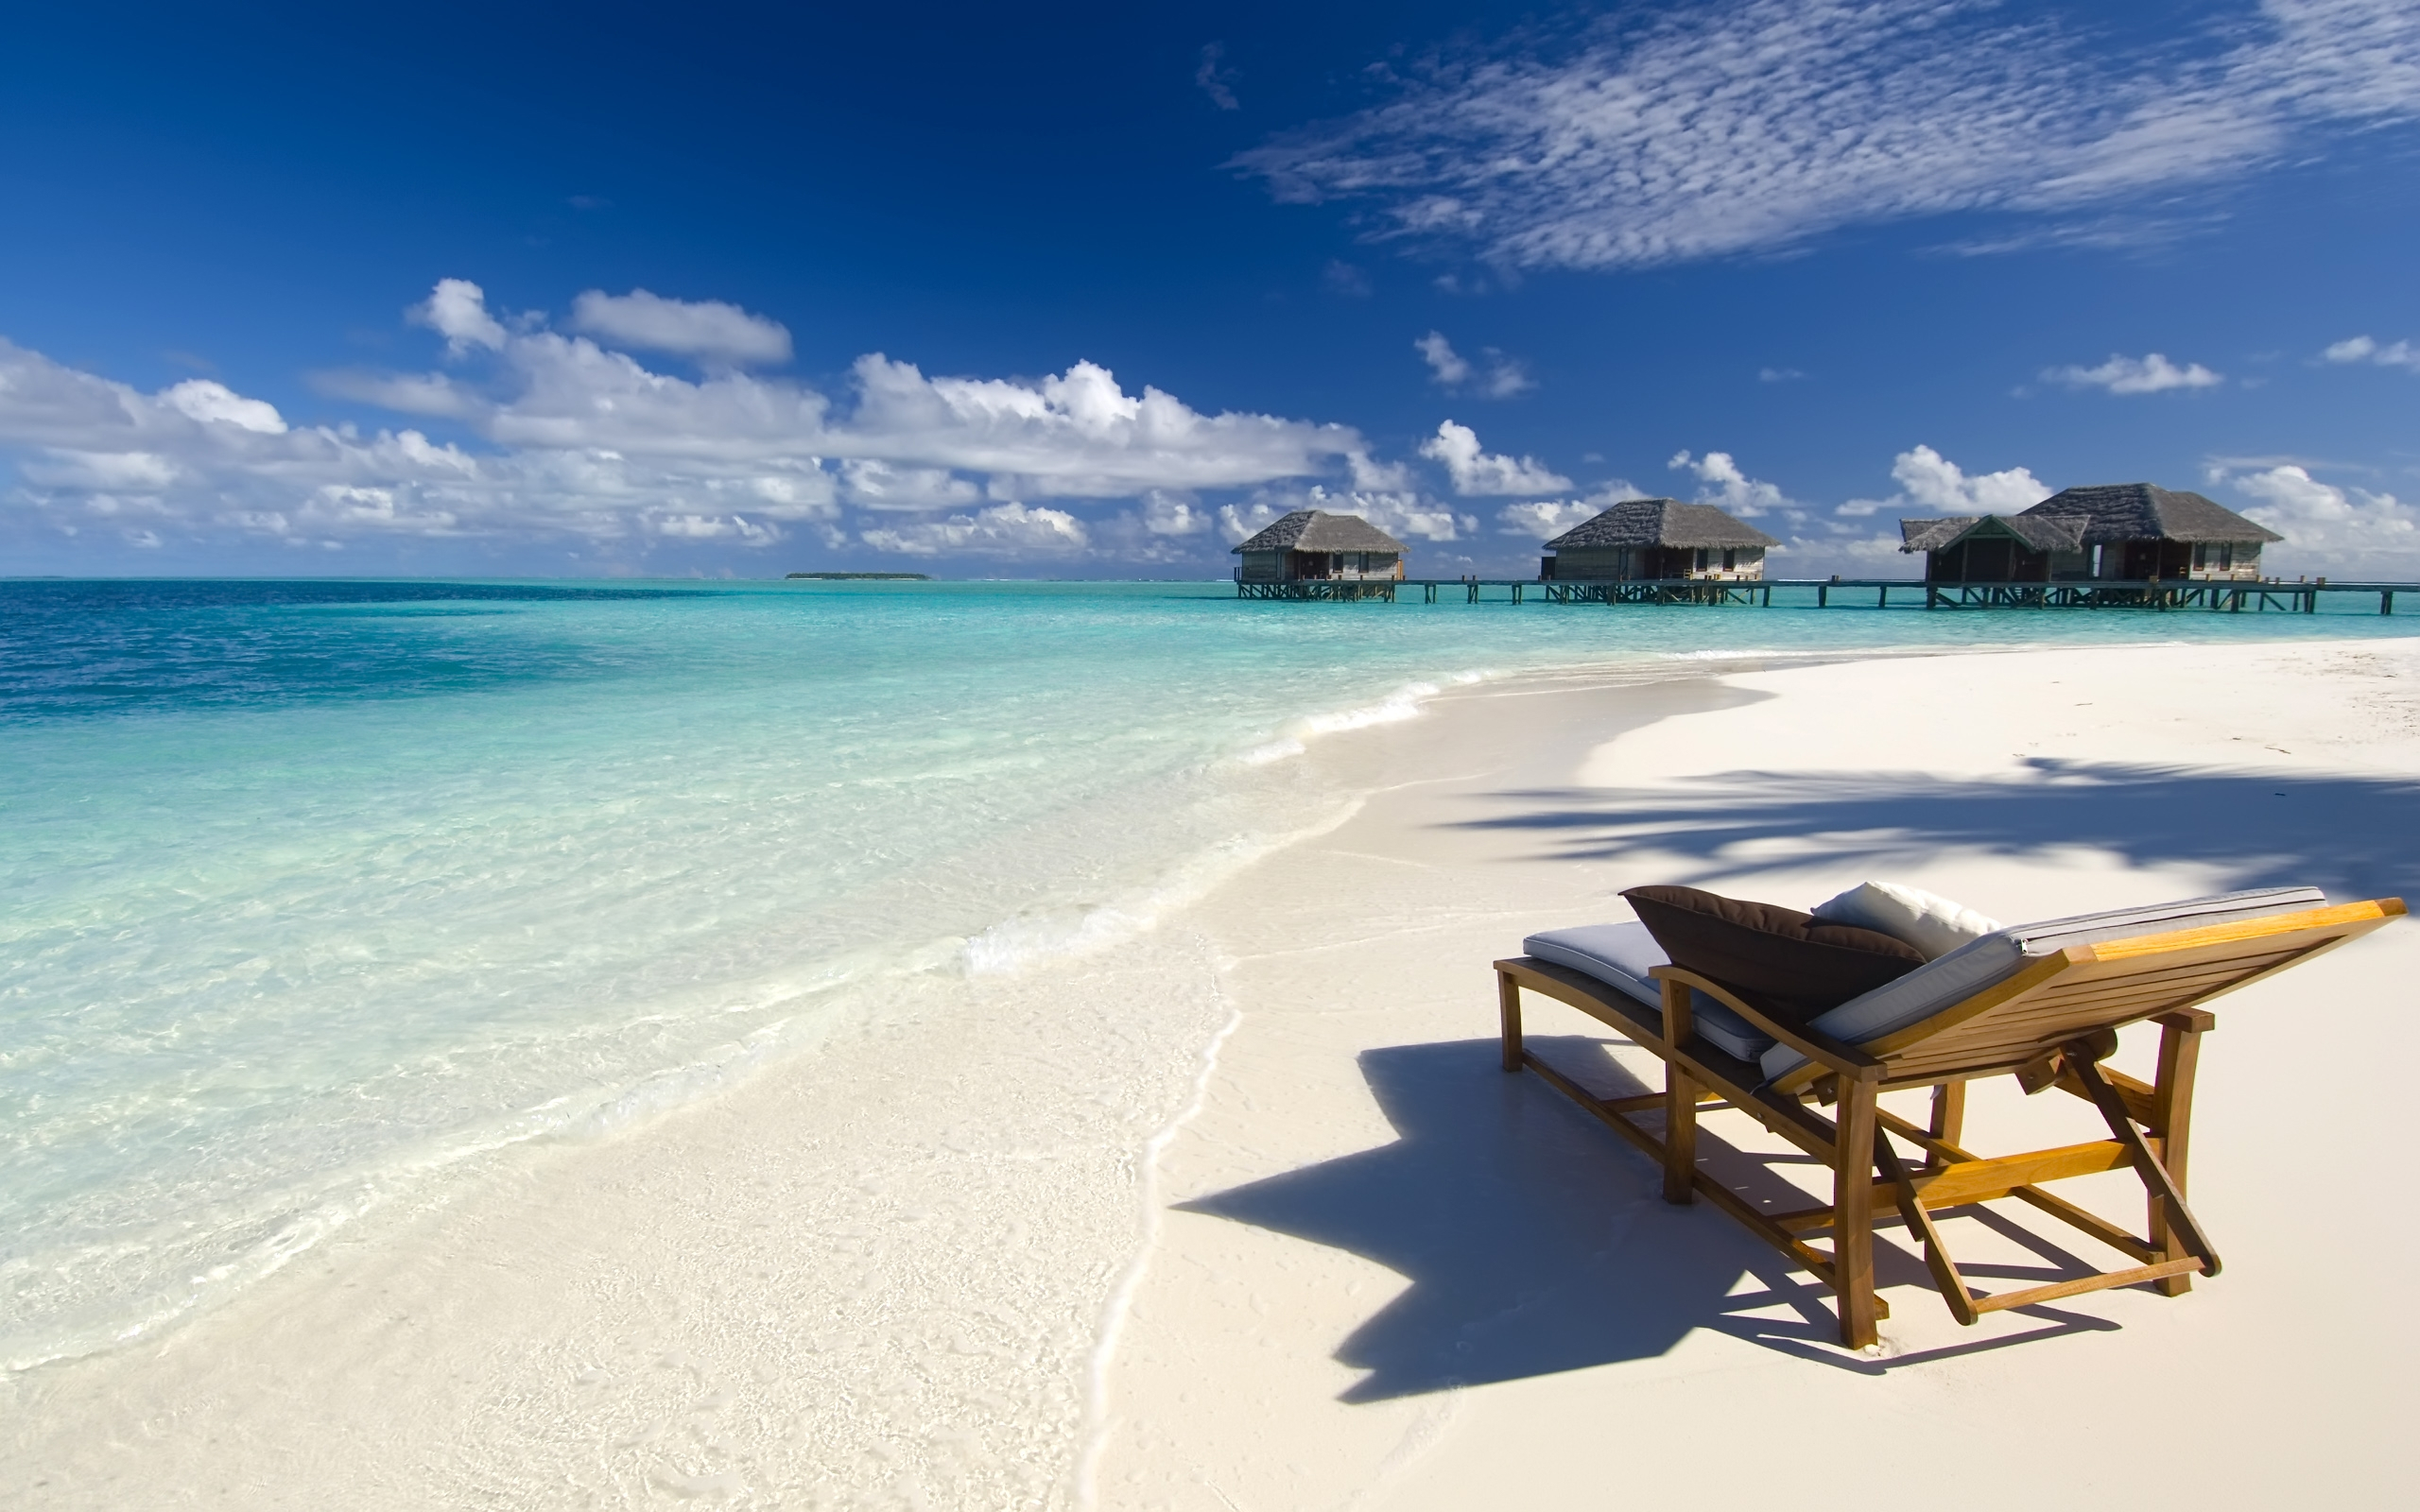 sand, photography, holiday, beach, chair, hut, ocean, tropical